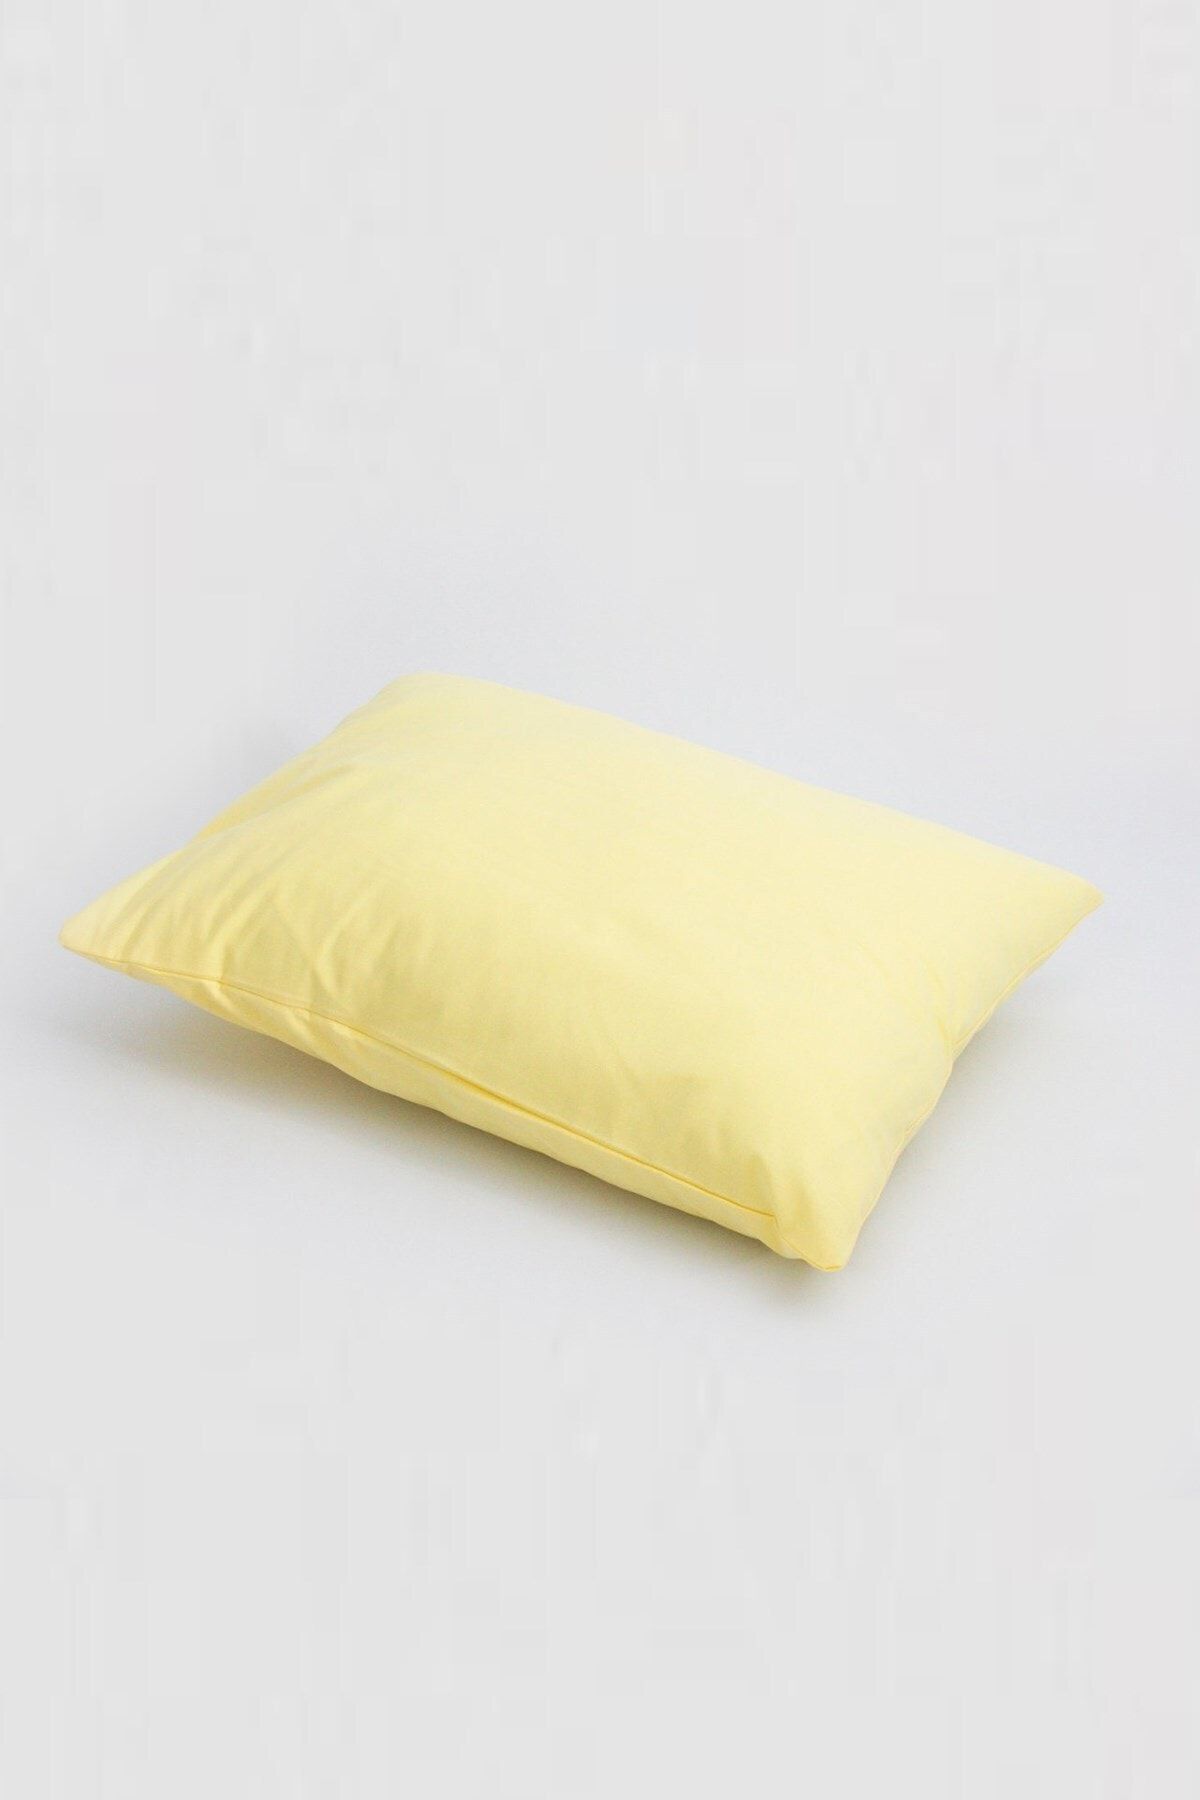 Jaju Baby Sarı Yastık Kılıfı 50*70 Cm